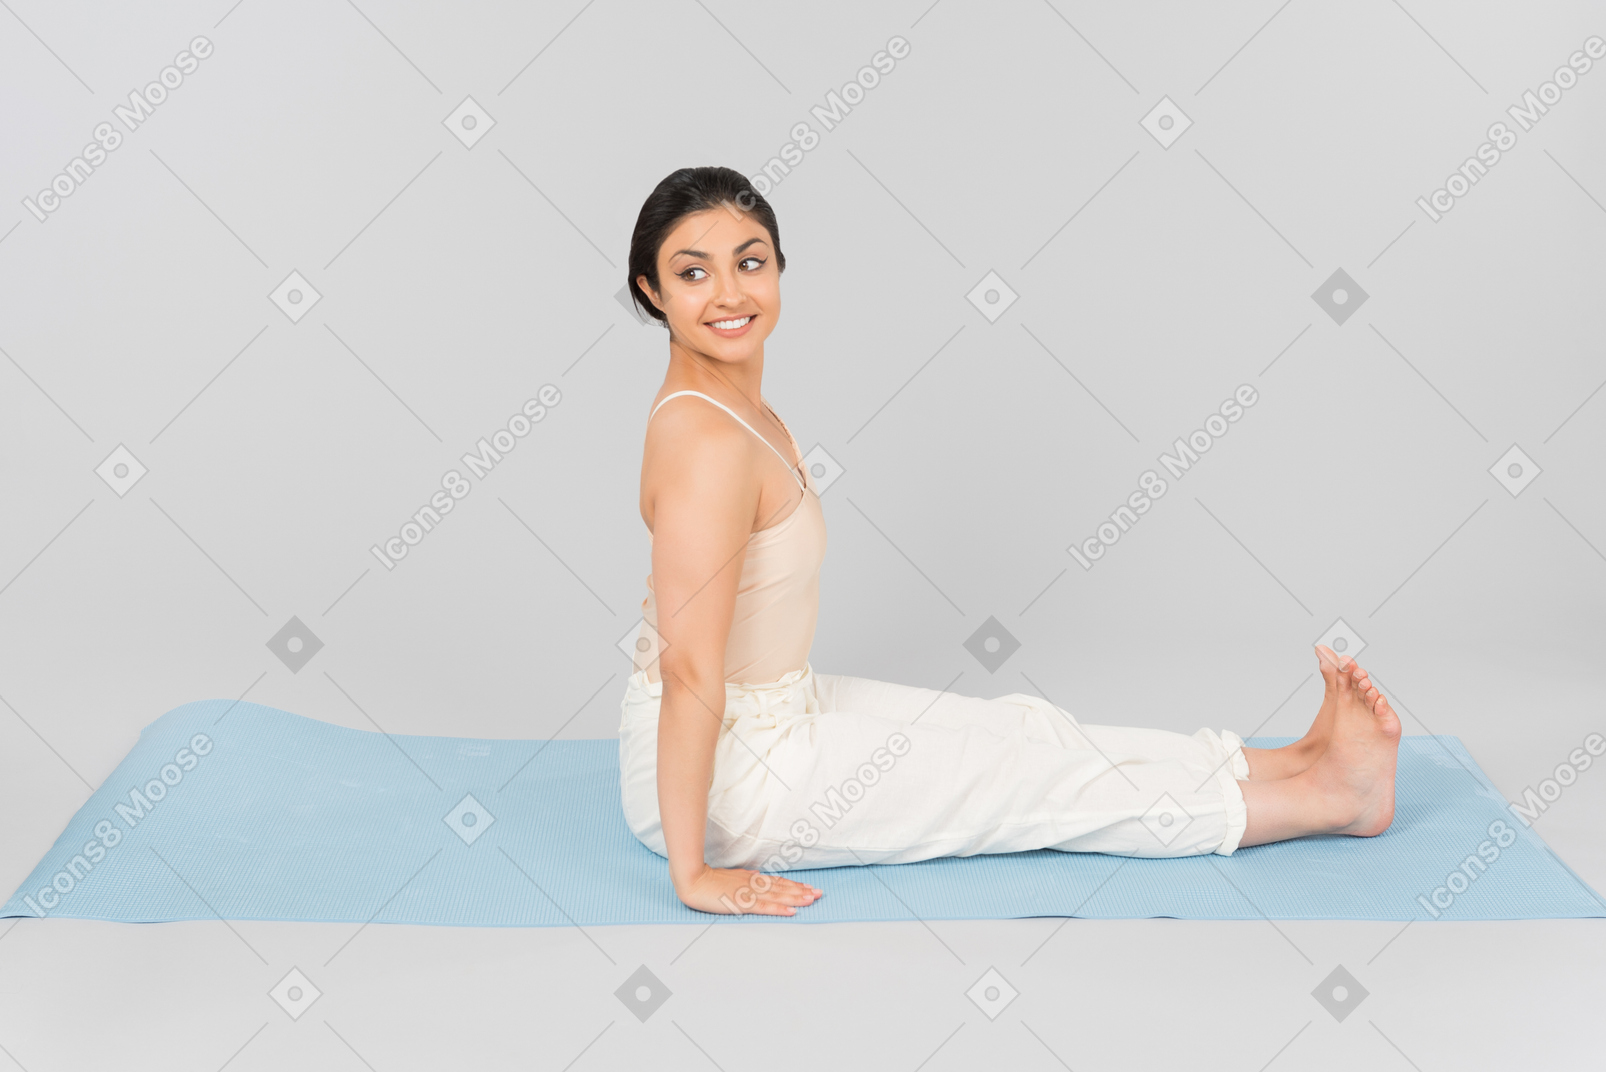 Junge indische frau, die mit der rückseite gerade auf yogamatte sitzt